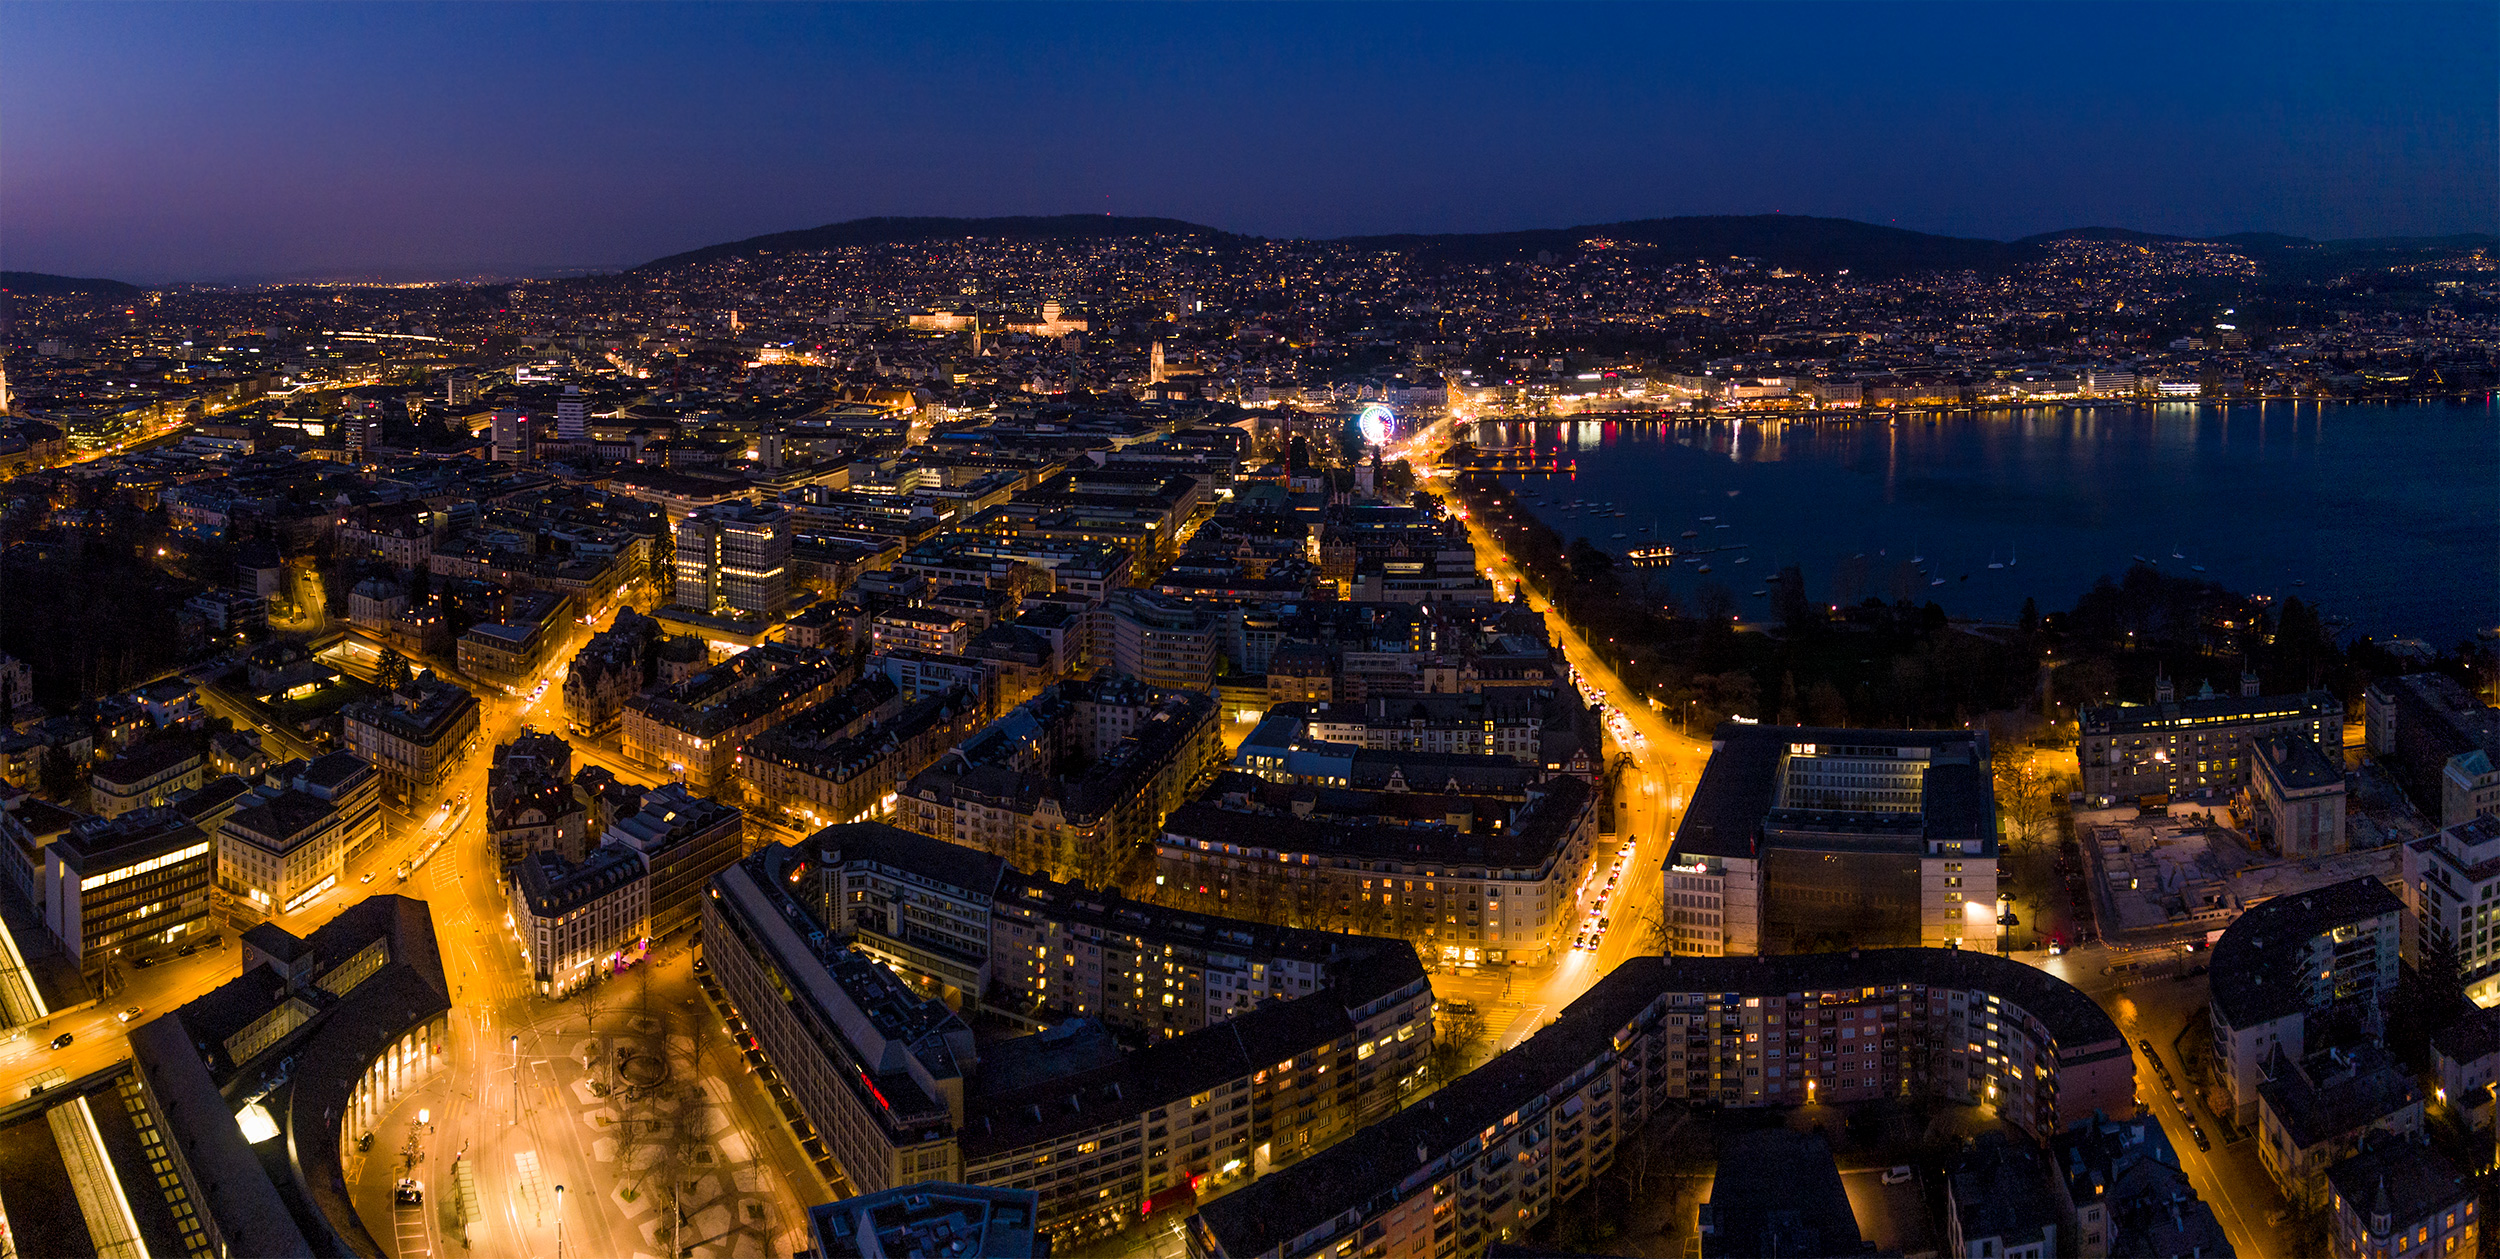 Luftaufnahe der Stadt Zürich bei Nacht aus Blickrichtung Zürich Enge